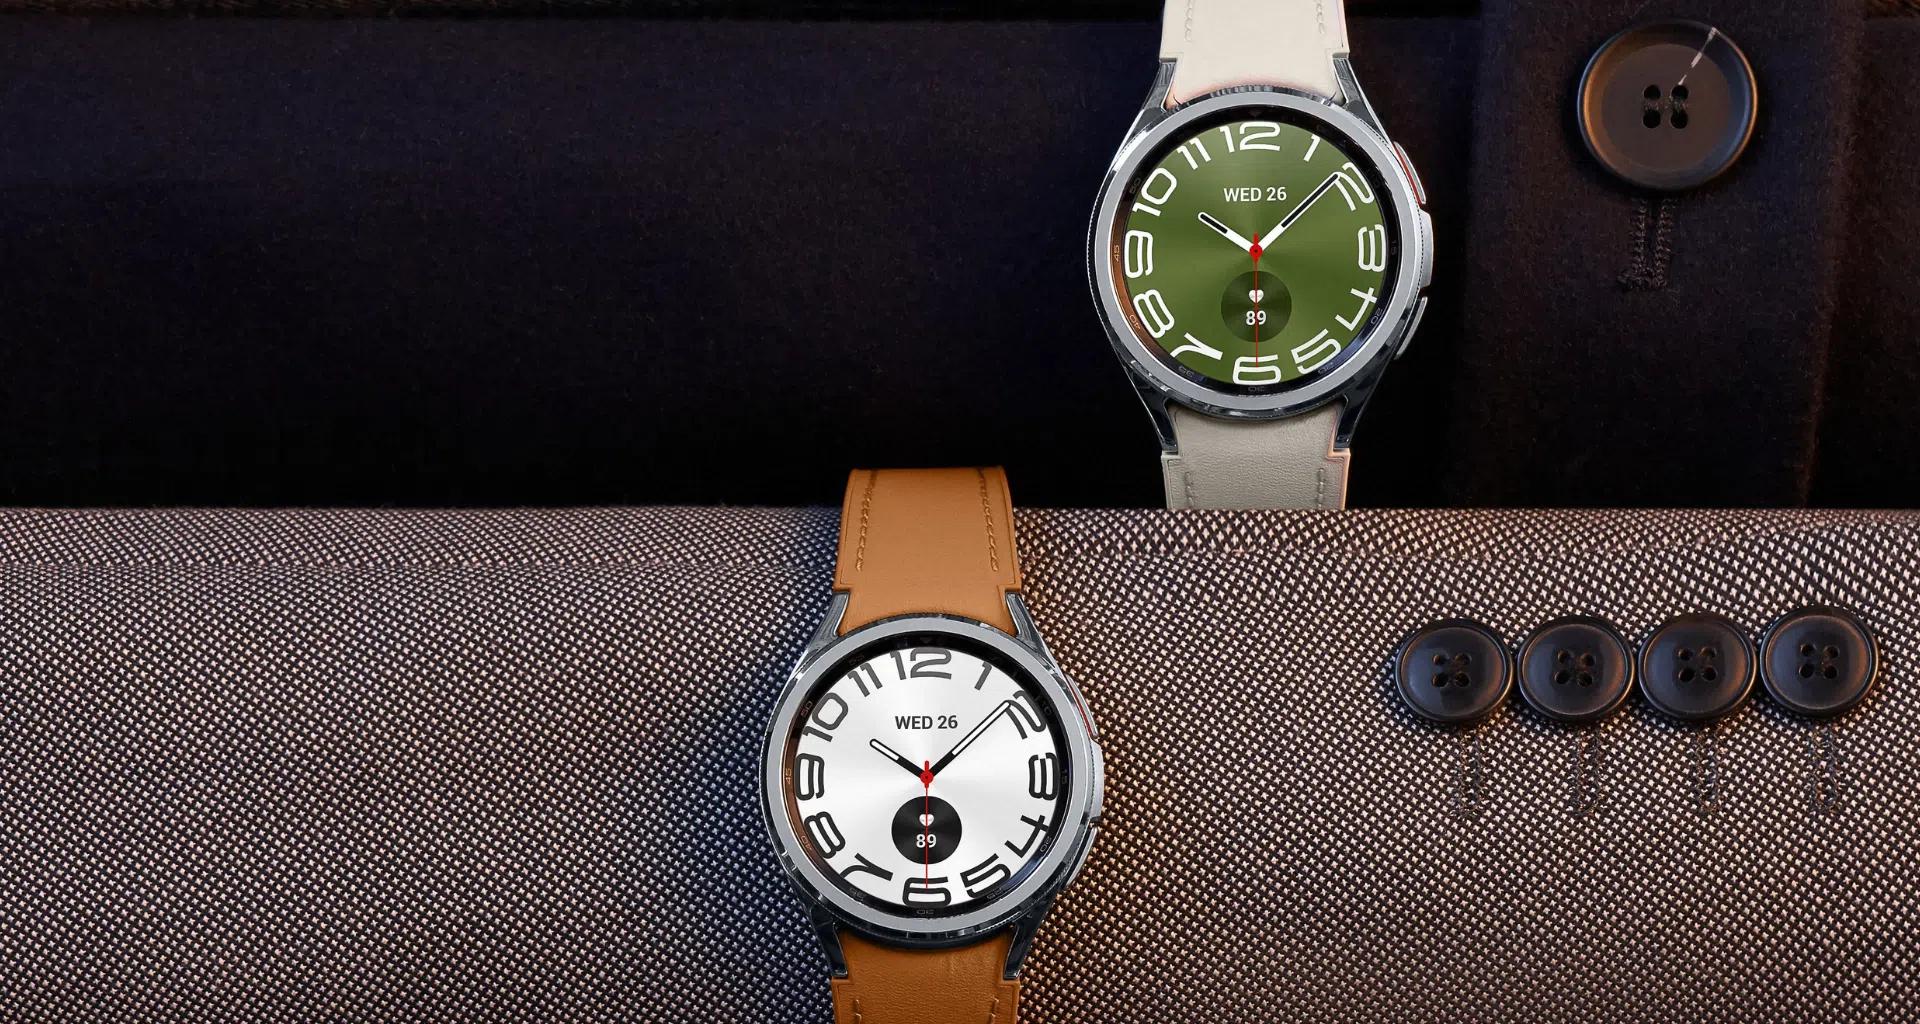 Galaxy watch6 é lançado em versões standard e classic. Empresa trouxe coroa giratória de volta para modelos maiores e processador da nova linha está 18% mais rápido